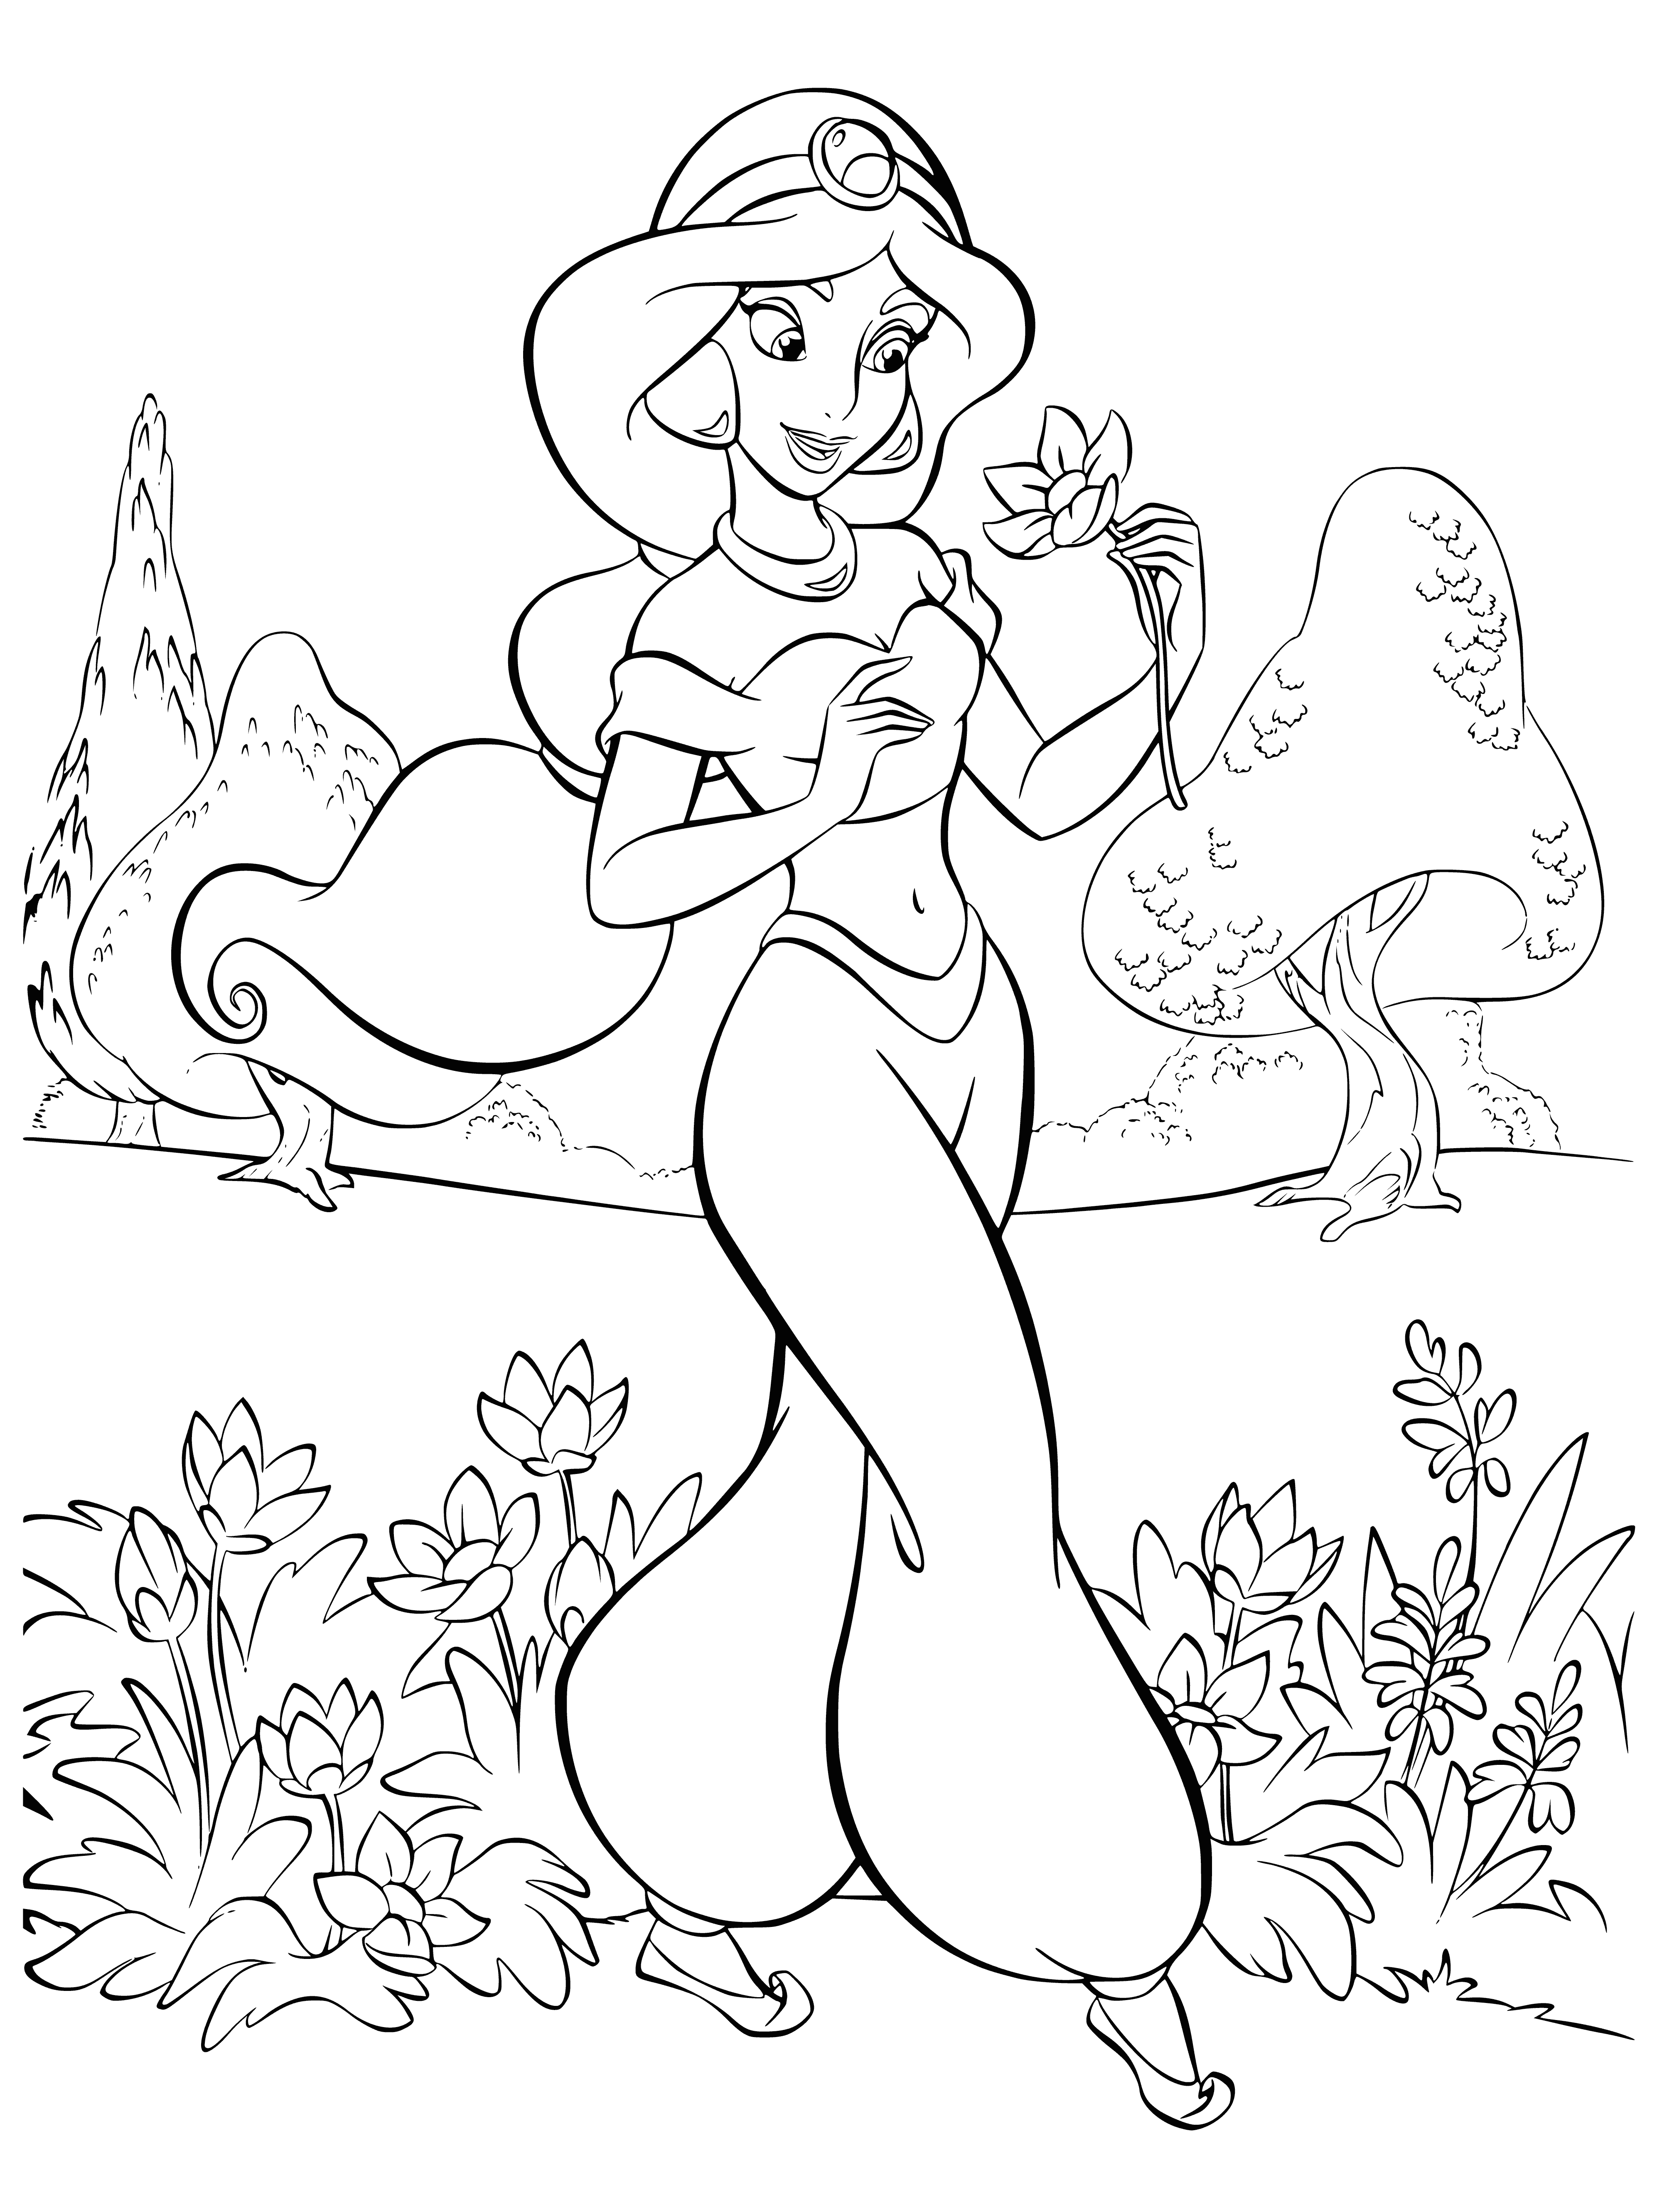 Disney Princess Jasmine coloring page